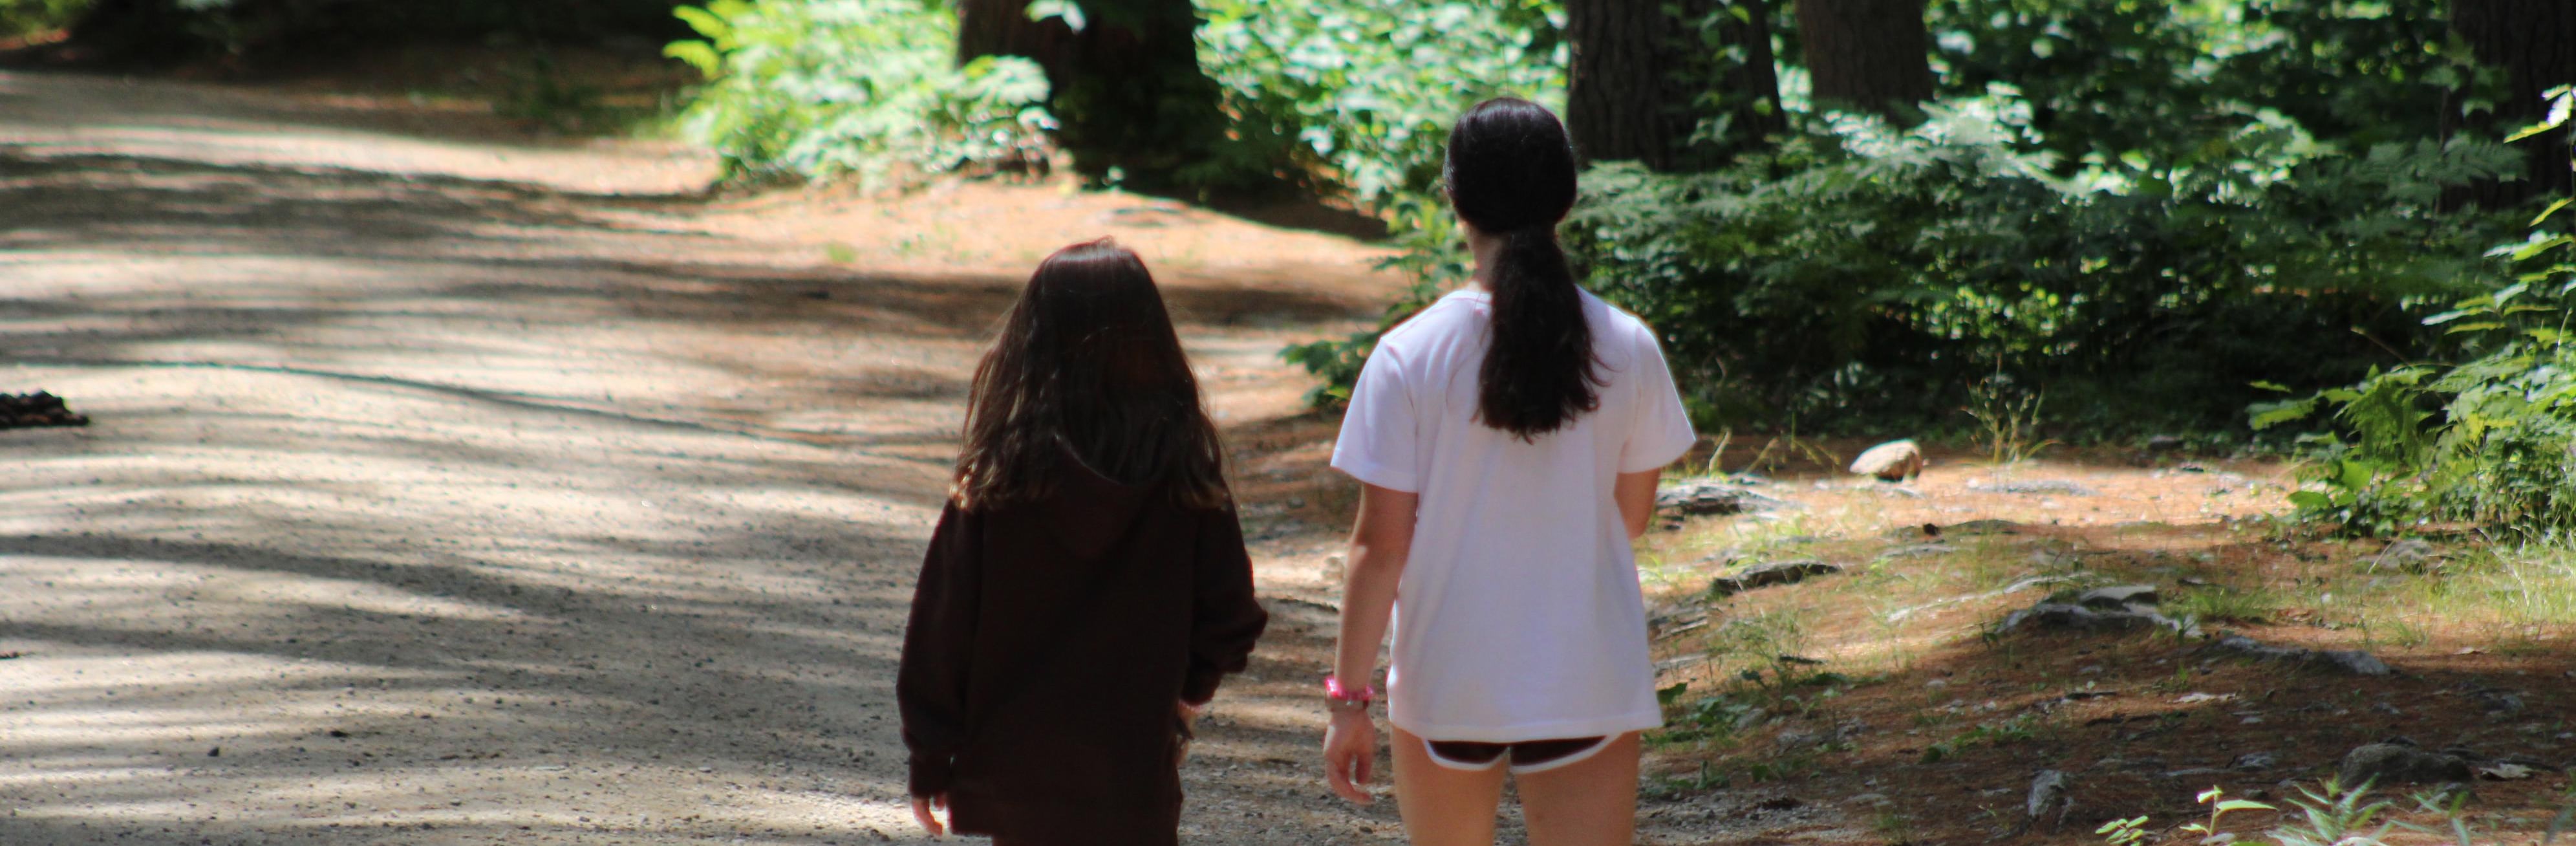 Campers walk together